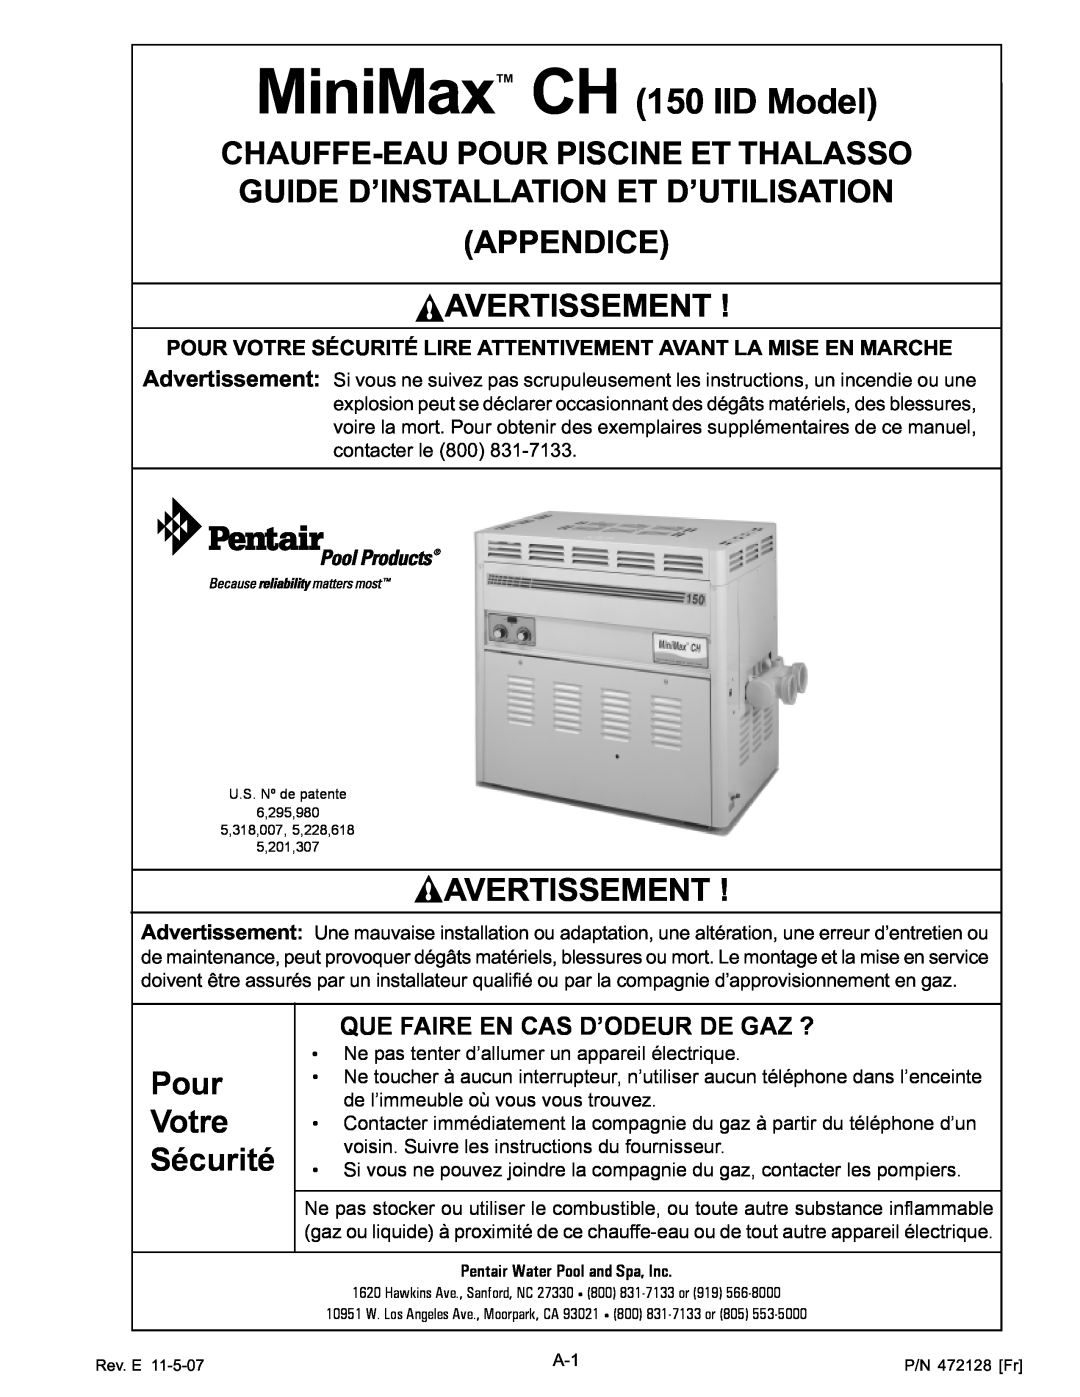 Pentair Hot Tub manual Appendice Avertissement, Pour Votre Sécurité Lire Attentivement Avant La Mise En Marche 